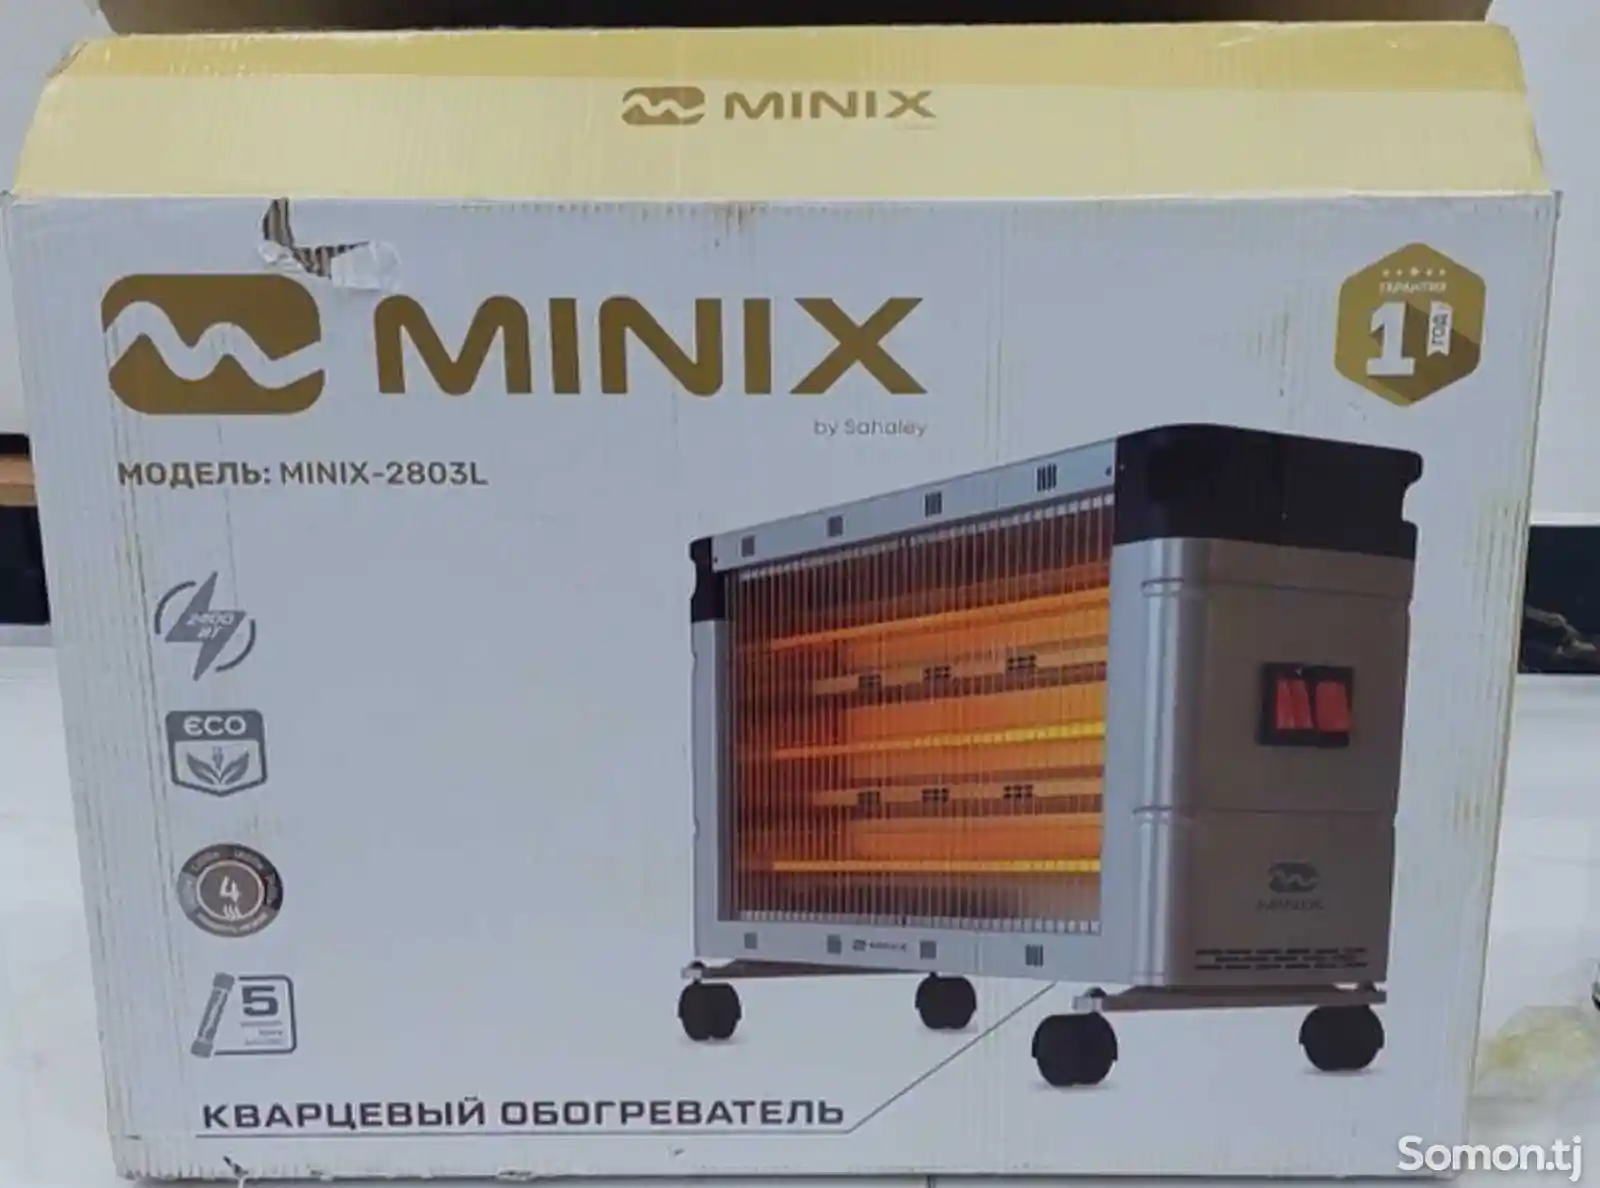 Обогреватель Minix-1